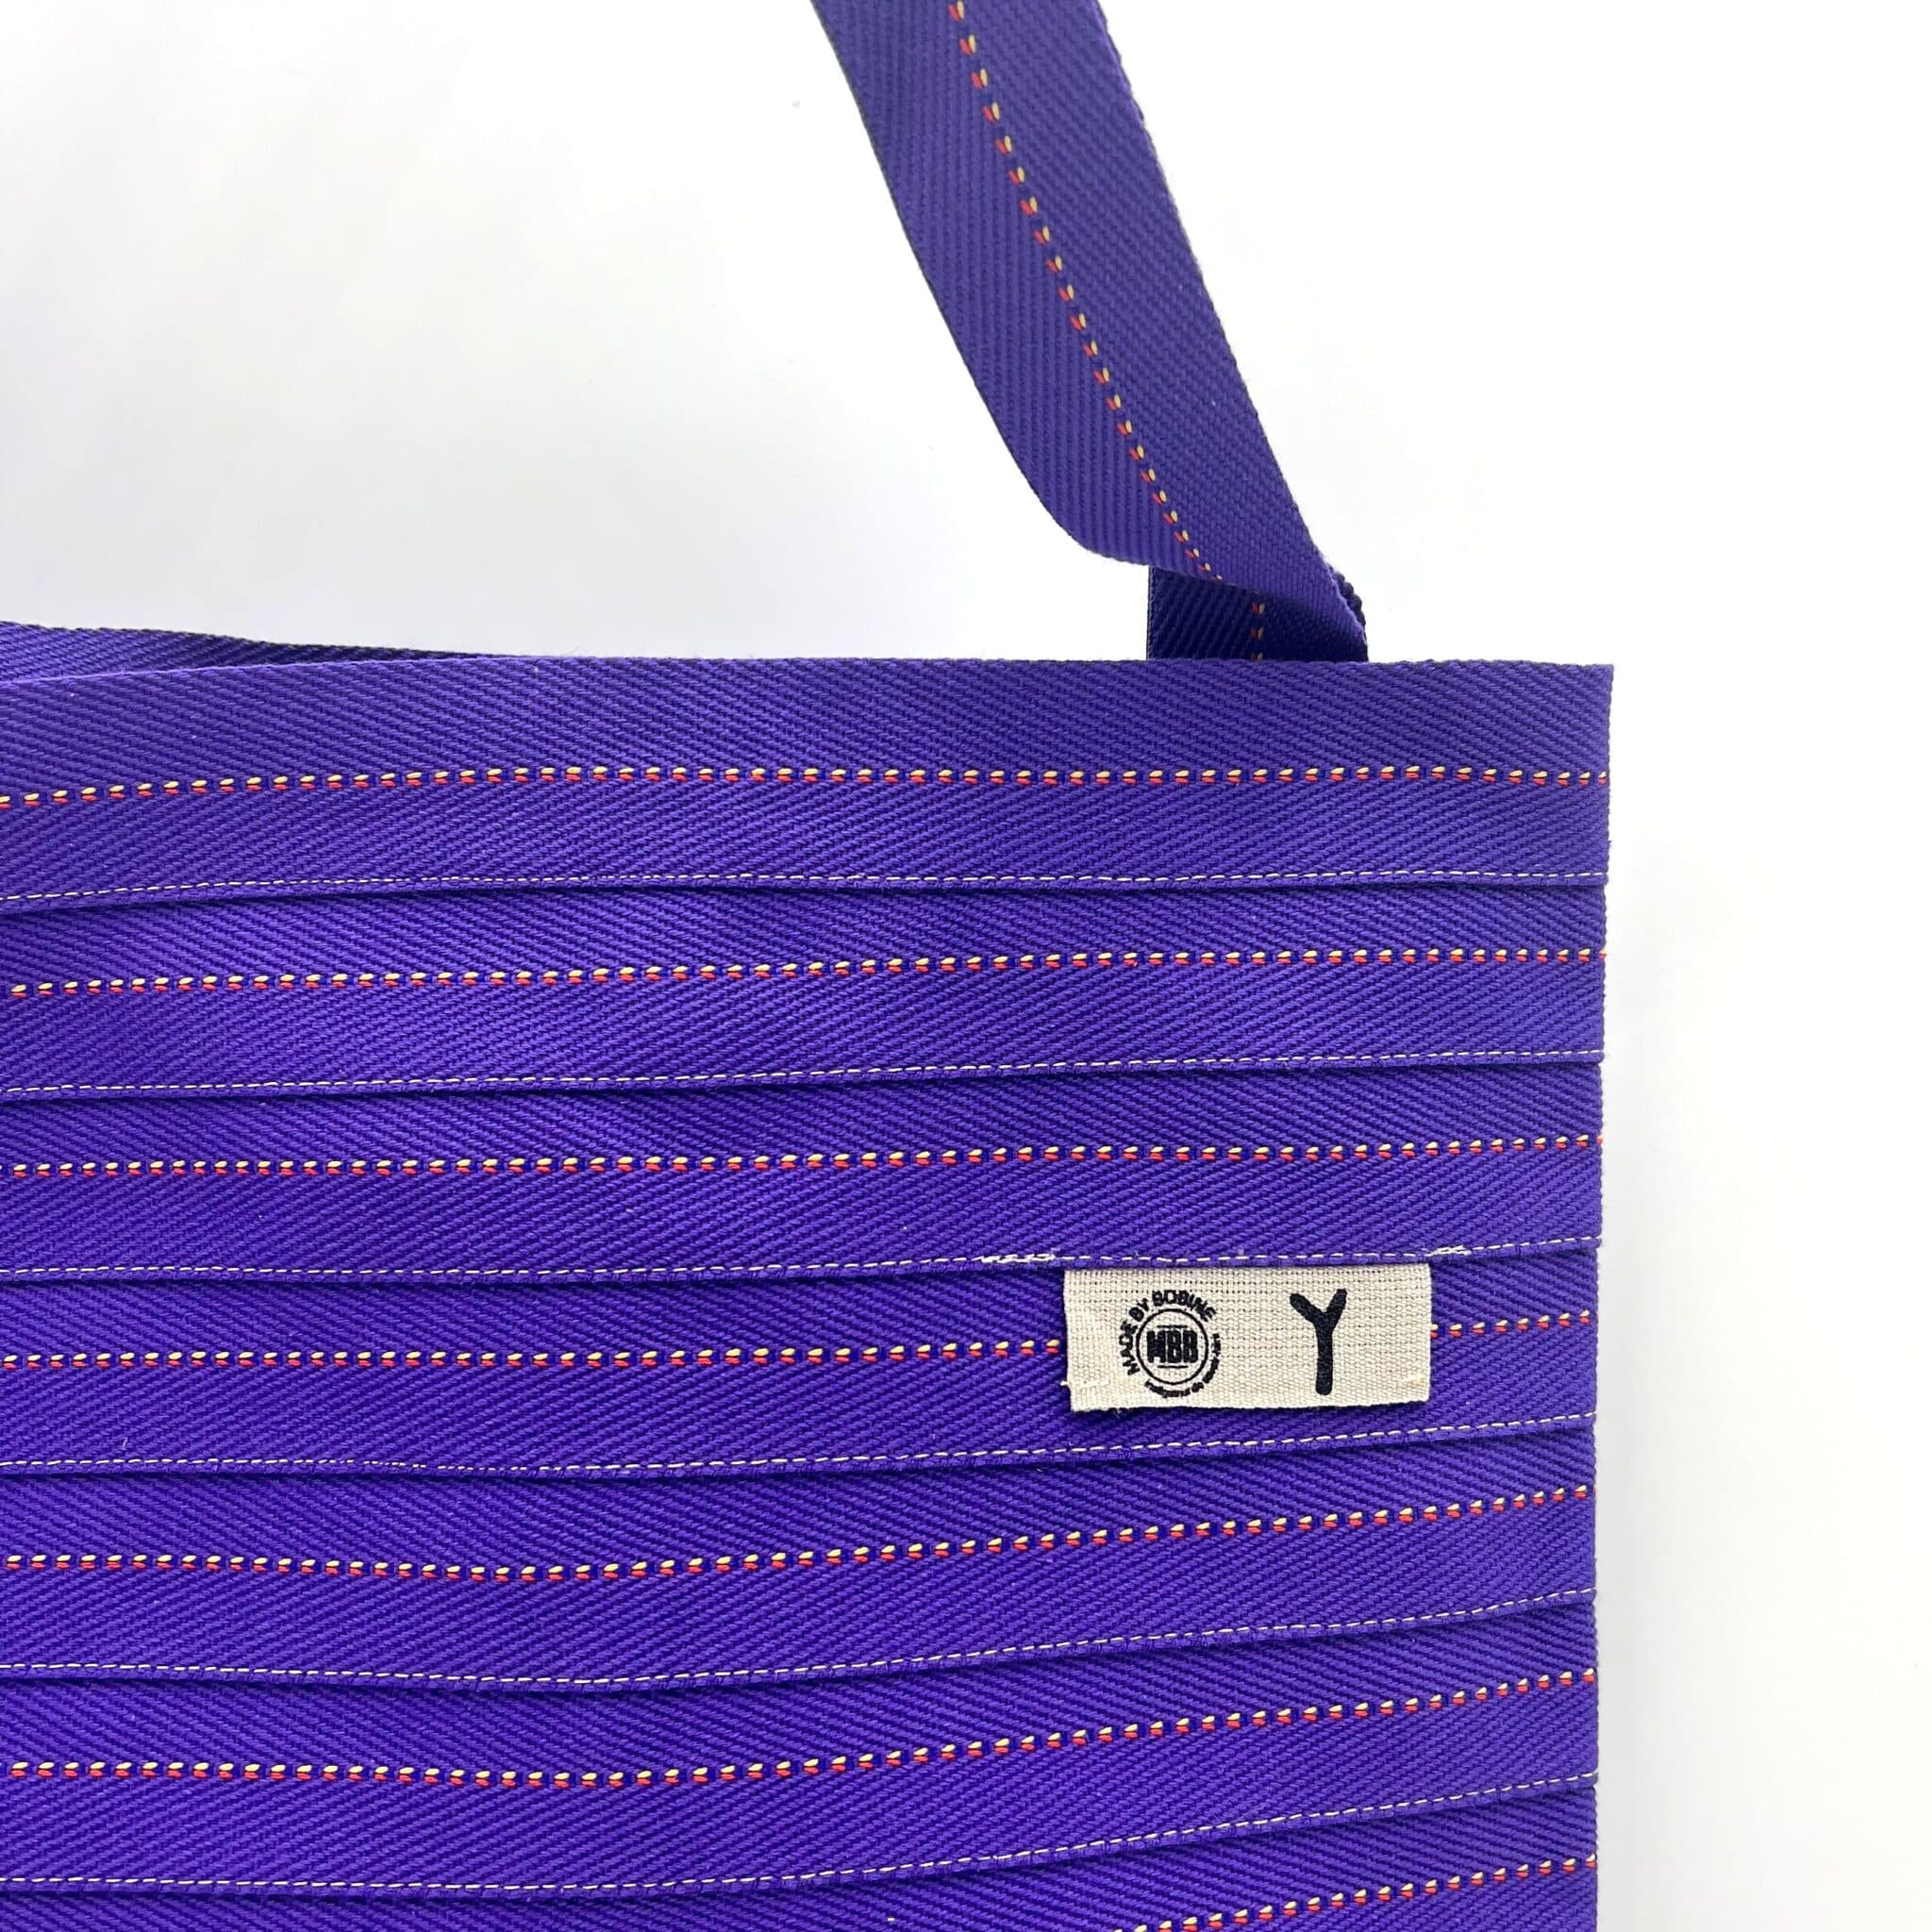 Sac violet modèle Charlène designé par Amaury Poudray